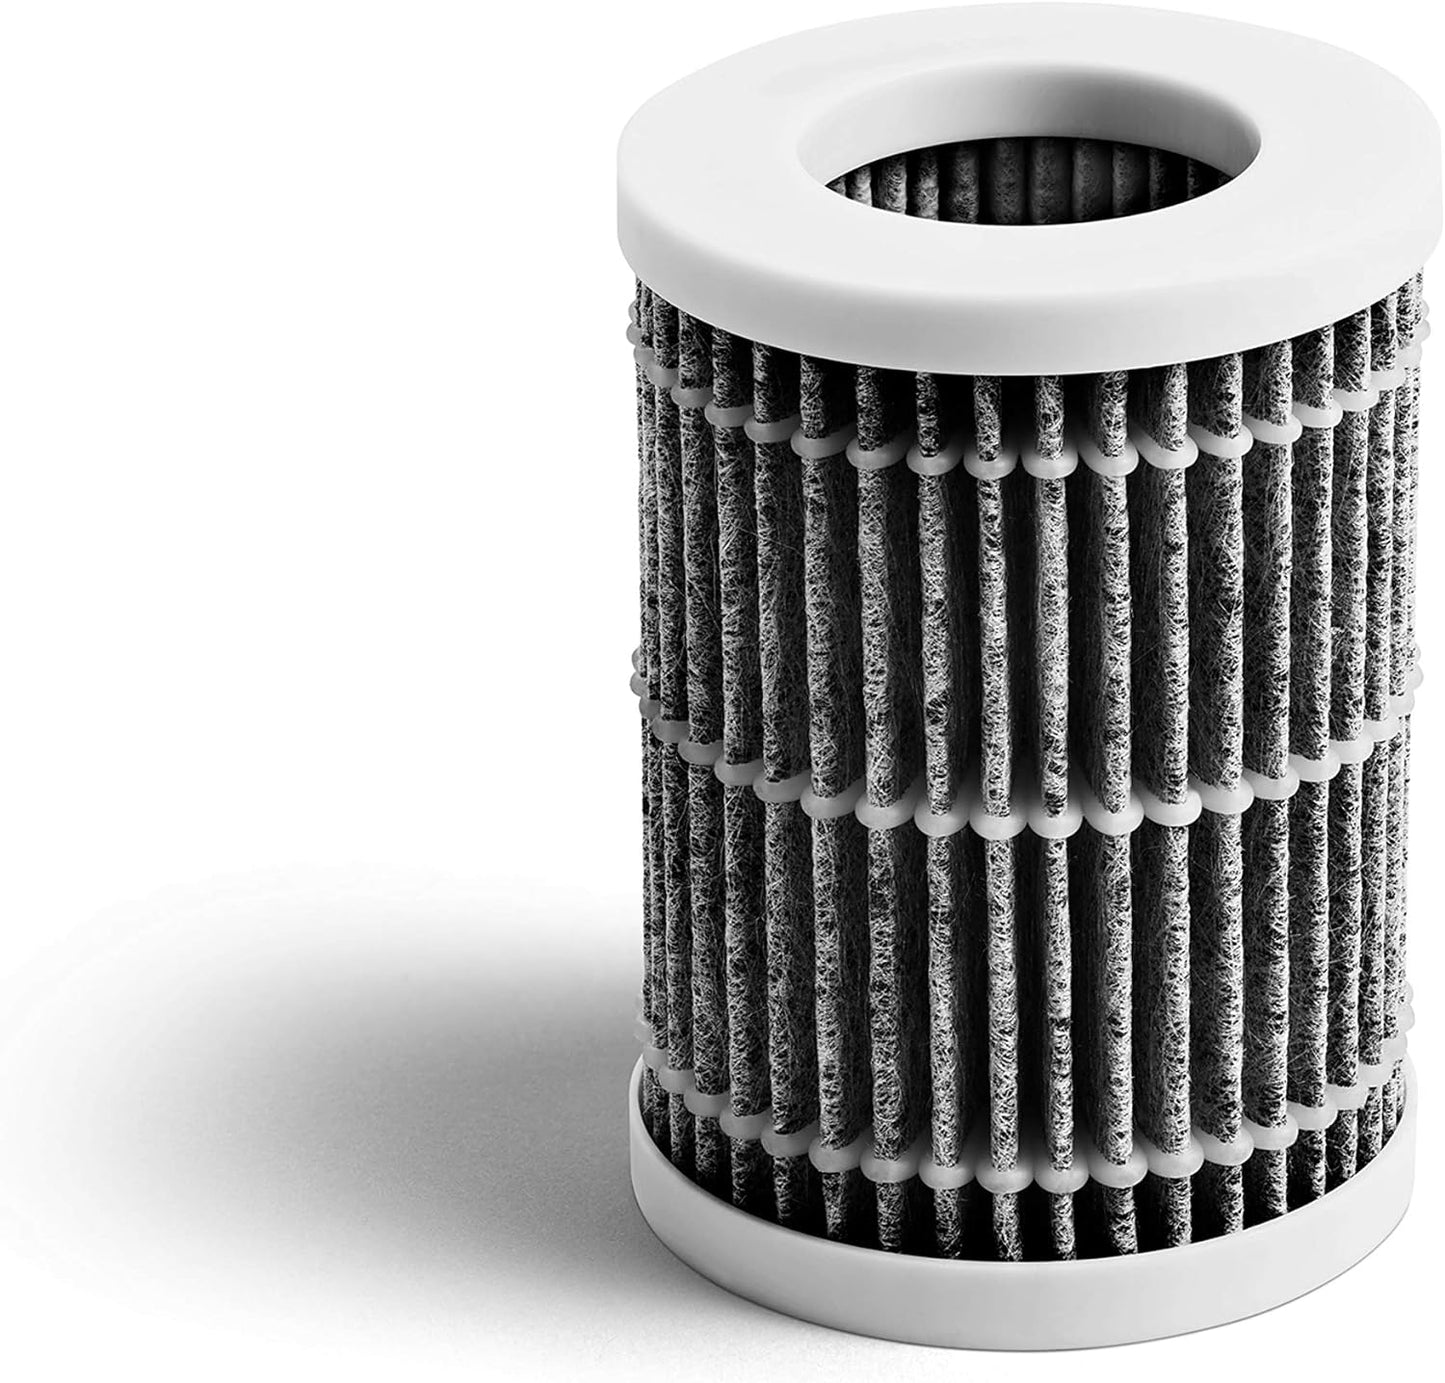 Munchkin Substituição de filtro de ar HEPA verdadeiro para purificador de ar, contagem de 3